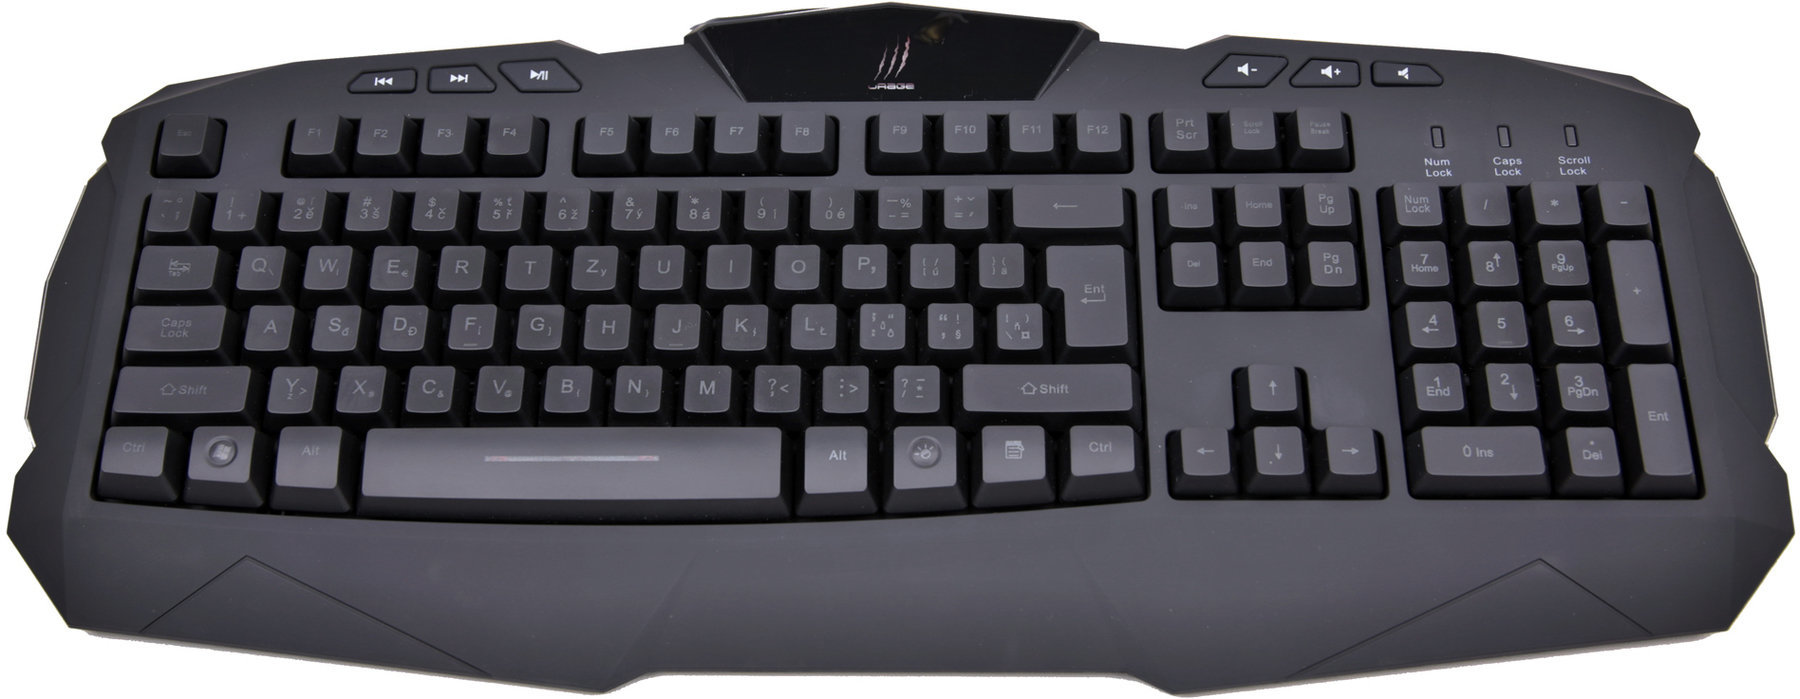 Πληκτρολόγιο Hama uRage Keyboard Illuminated 113729